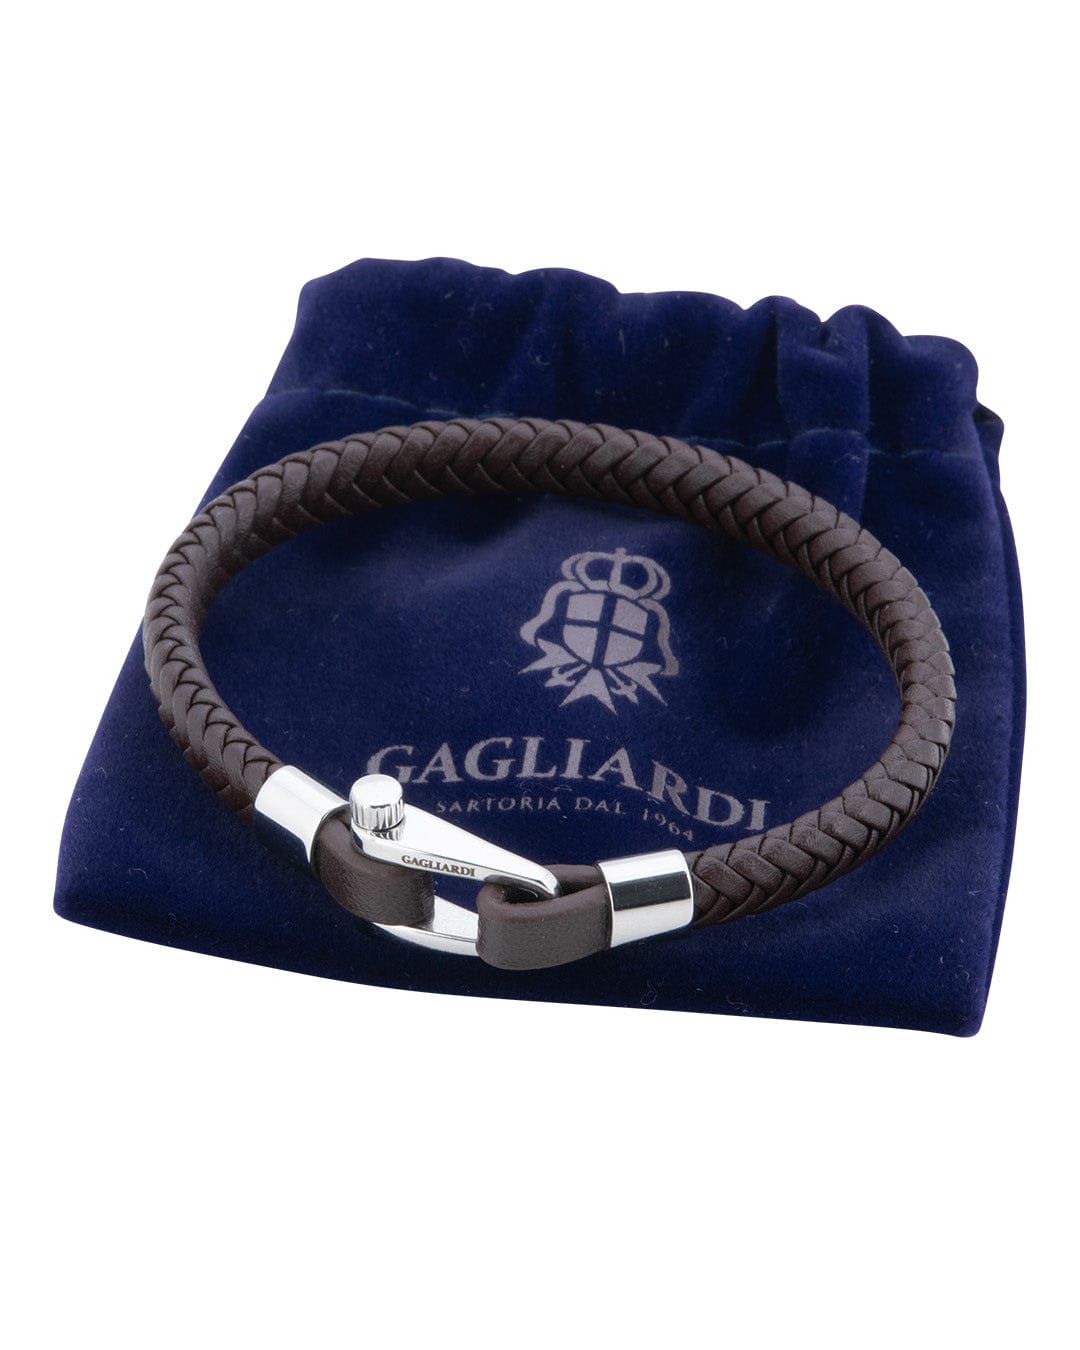 Gagliardi Bracelets Gagliardi Brown Braided Leather Bracelet With Polished Steel Screw Clasp